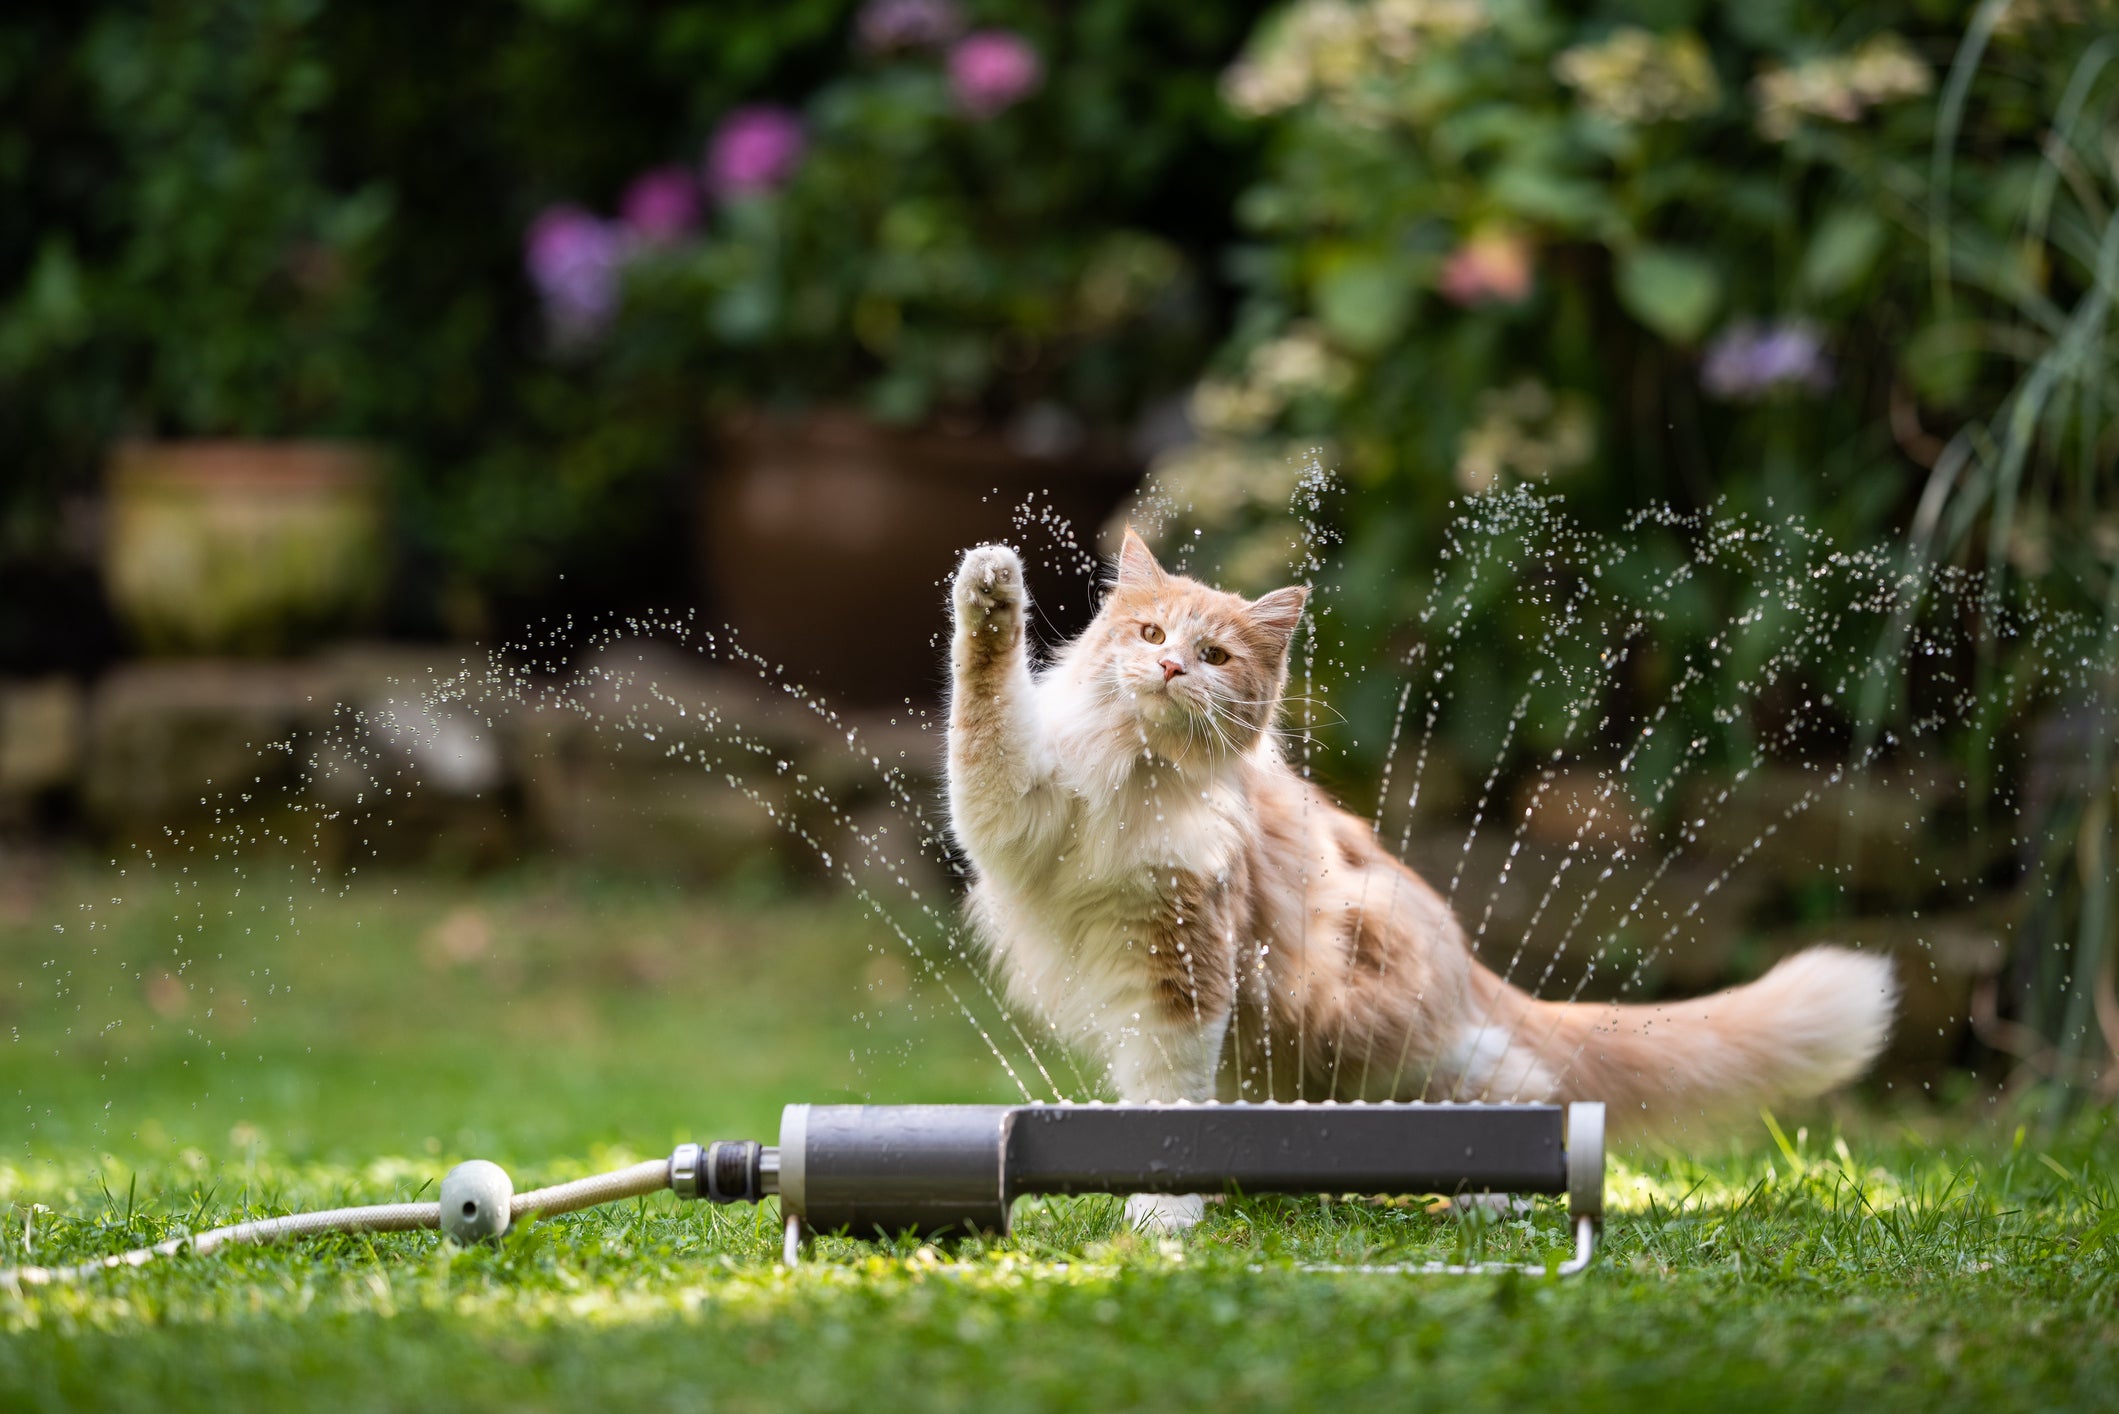 comportamento felino: gato brincado com água no quintal